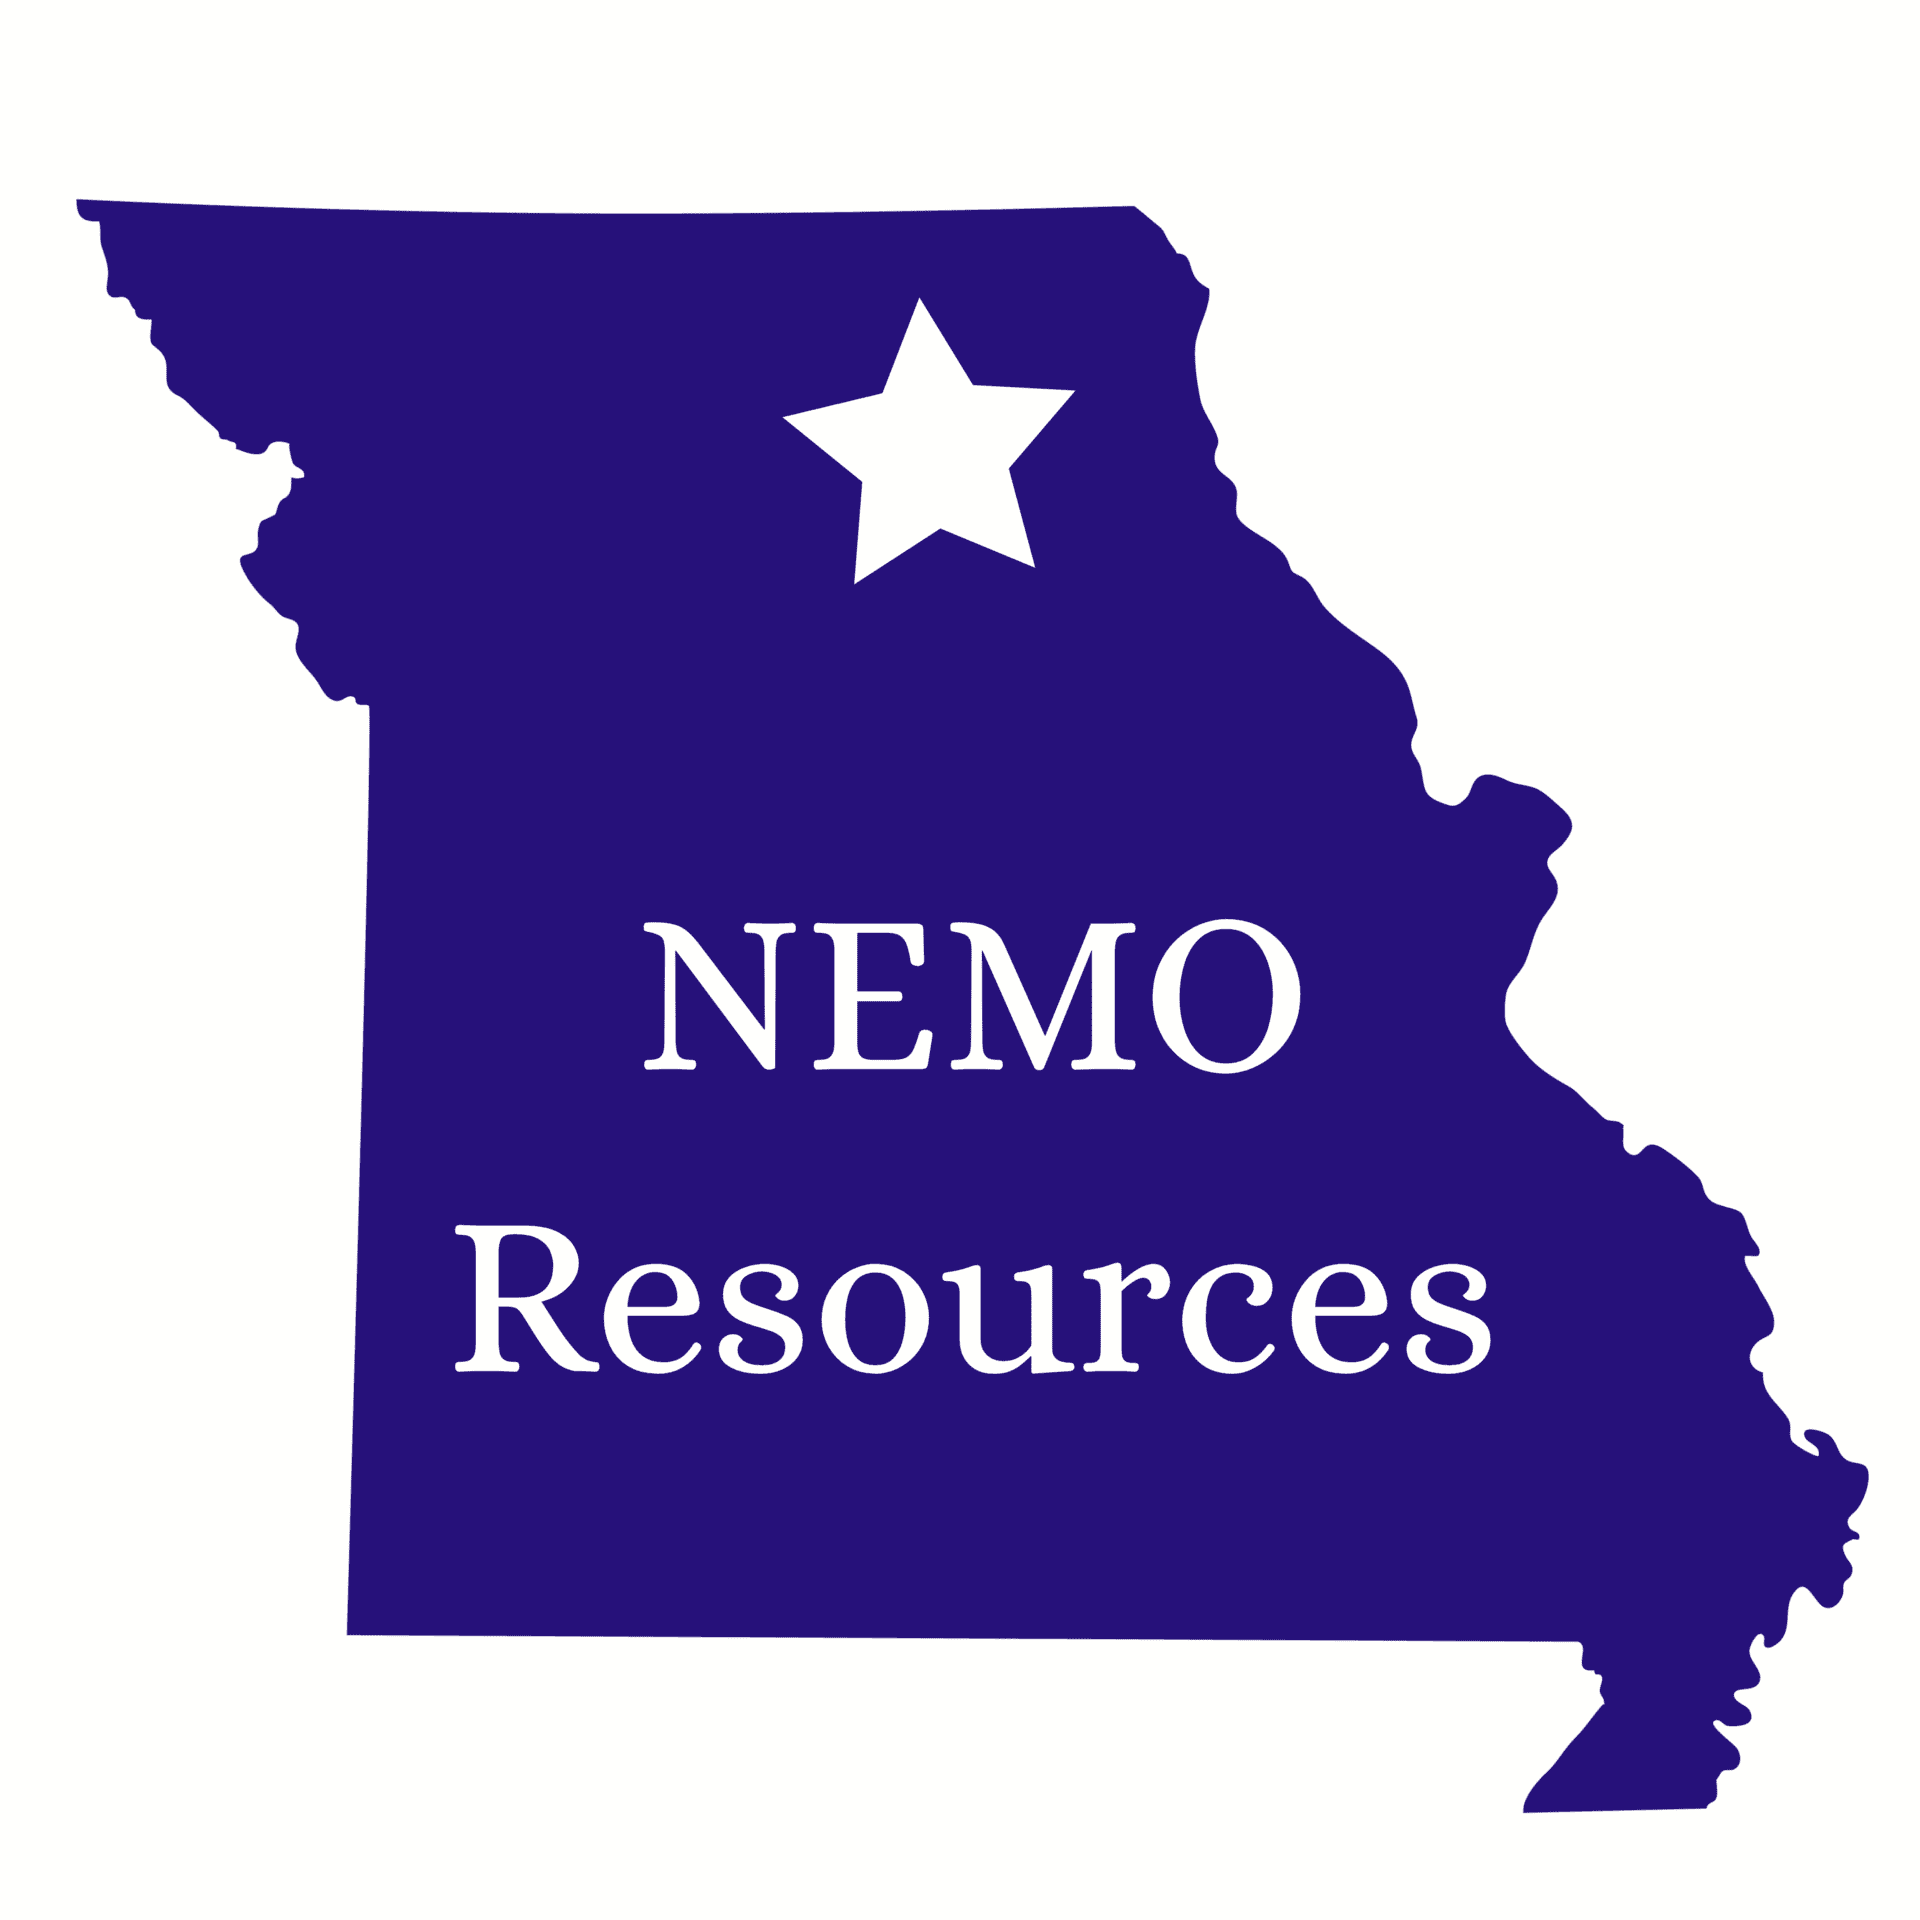 NEMO Resources